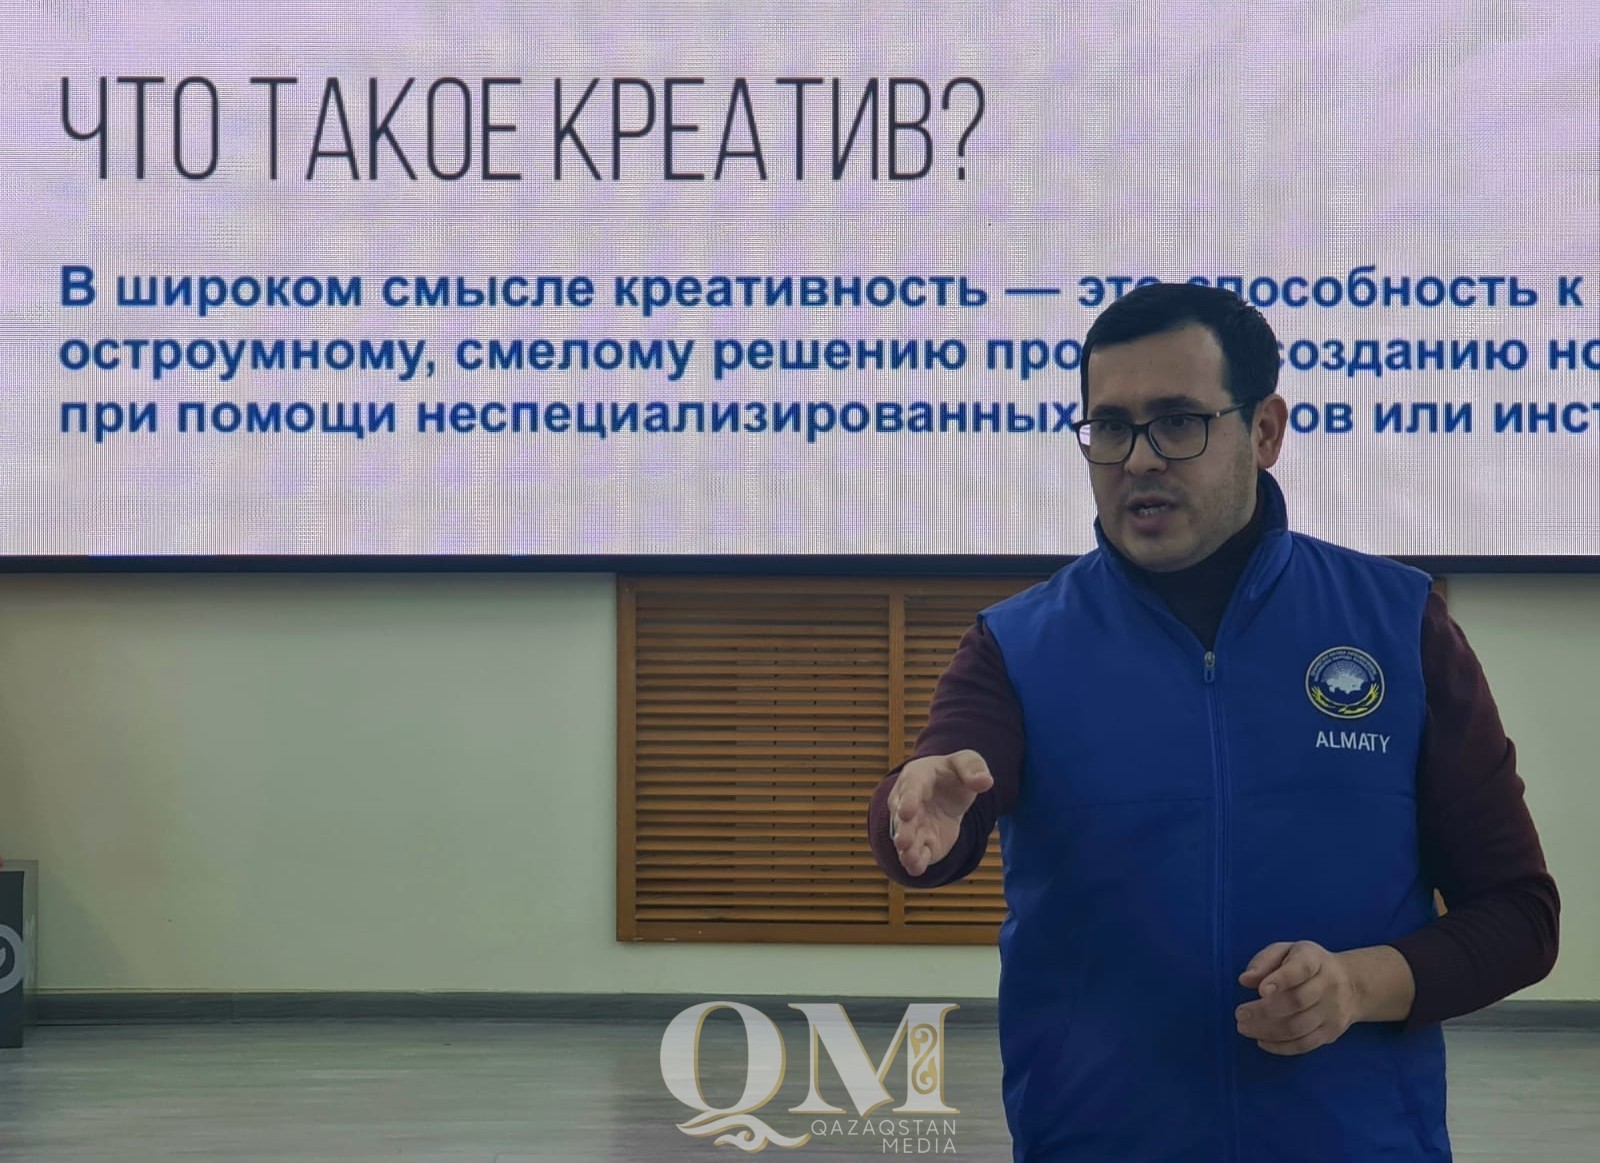 Семинар “Ассамблея народа Казахстана в медиапространстве” прошел в Петропавловске